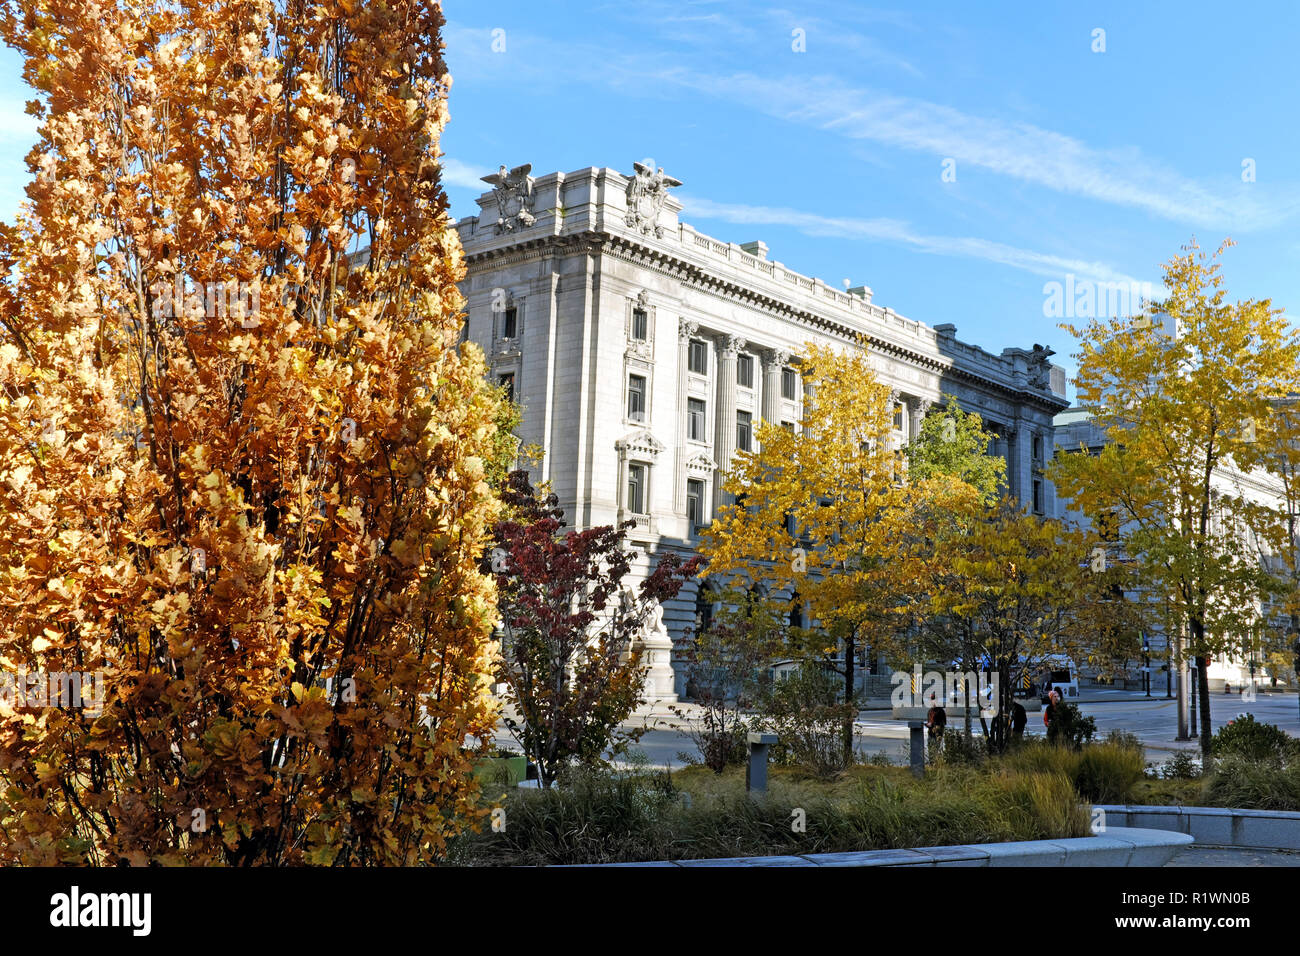 Vue à travers le centre-ville de Cleveland Place Publique feuillage d'automne, l'angle sud-ouest de l'historique Palais est considéré aux États-Unis Metzenbaum. Banque D'Images